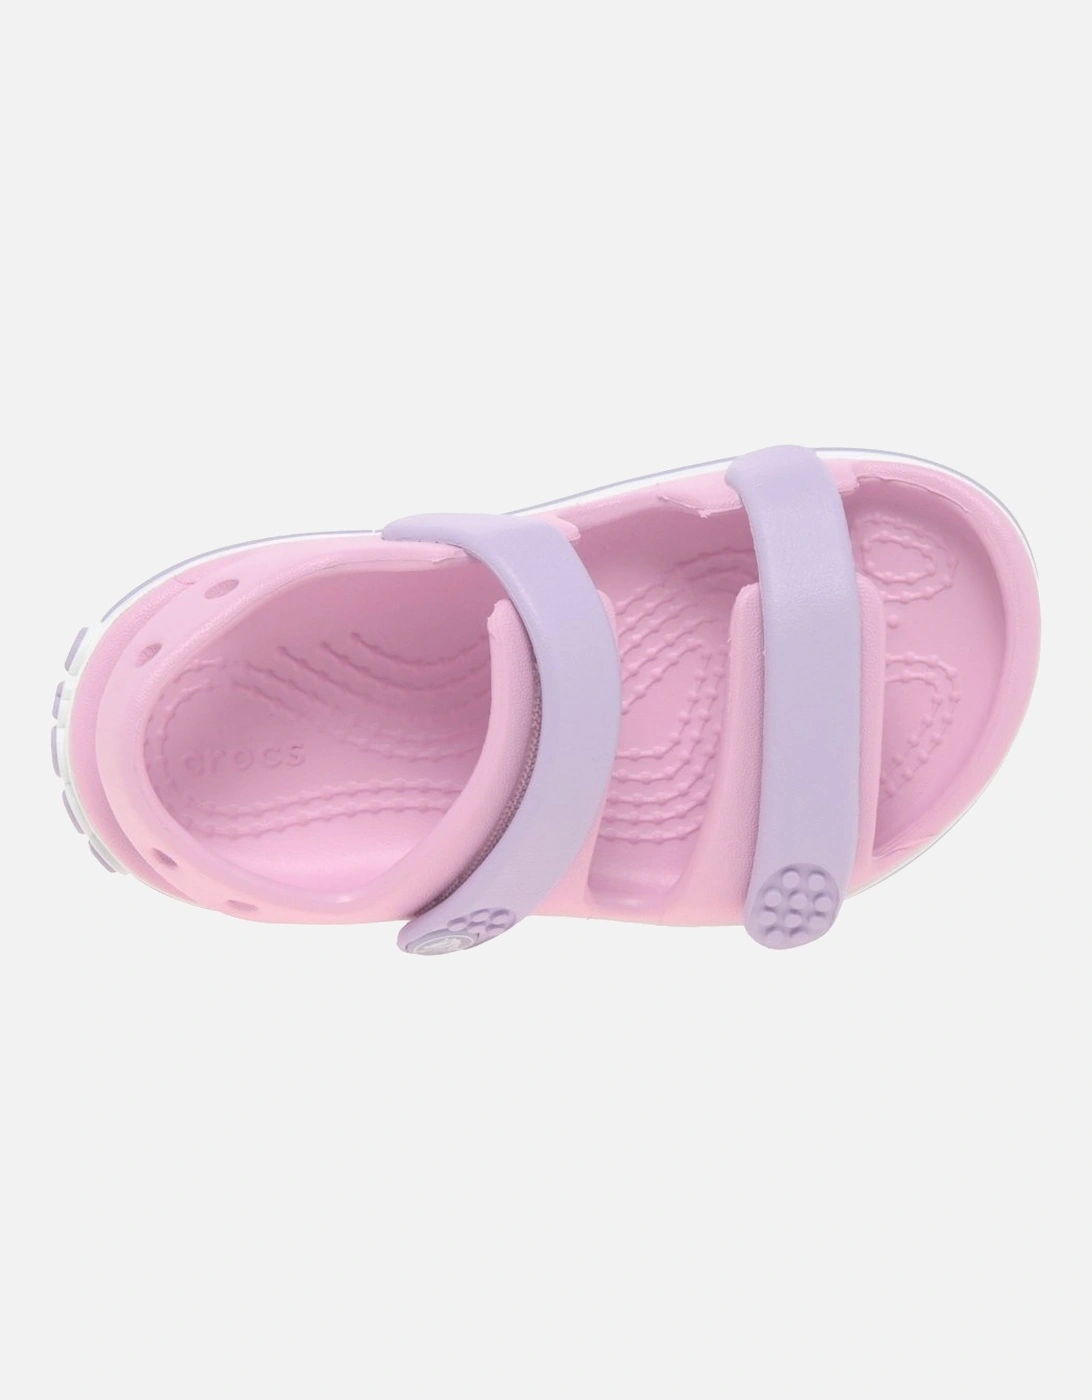 Crocband Girls Infant Sandals